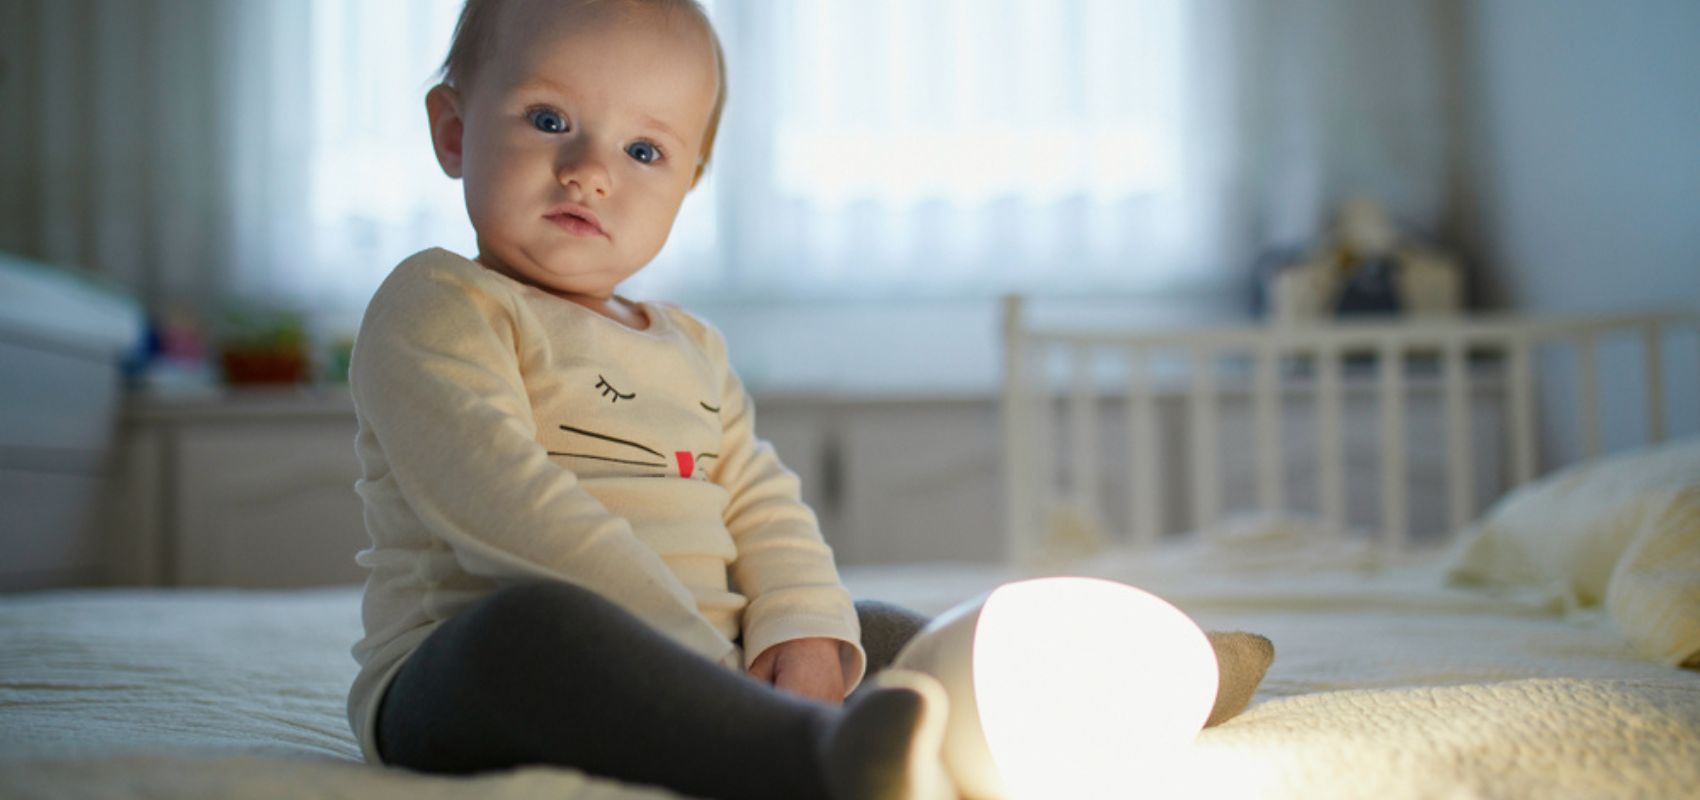 Veilleuse bébé sur prise secteur : le guide complet pour éclairer